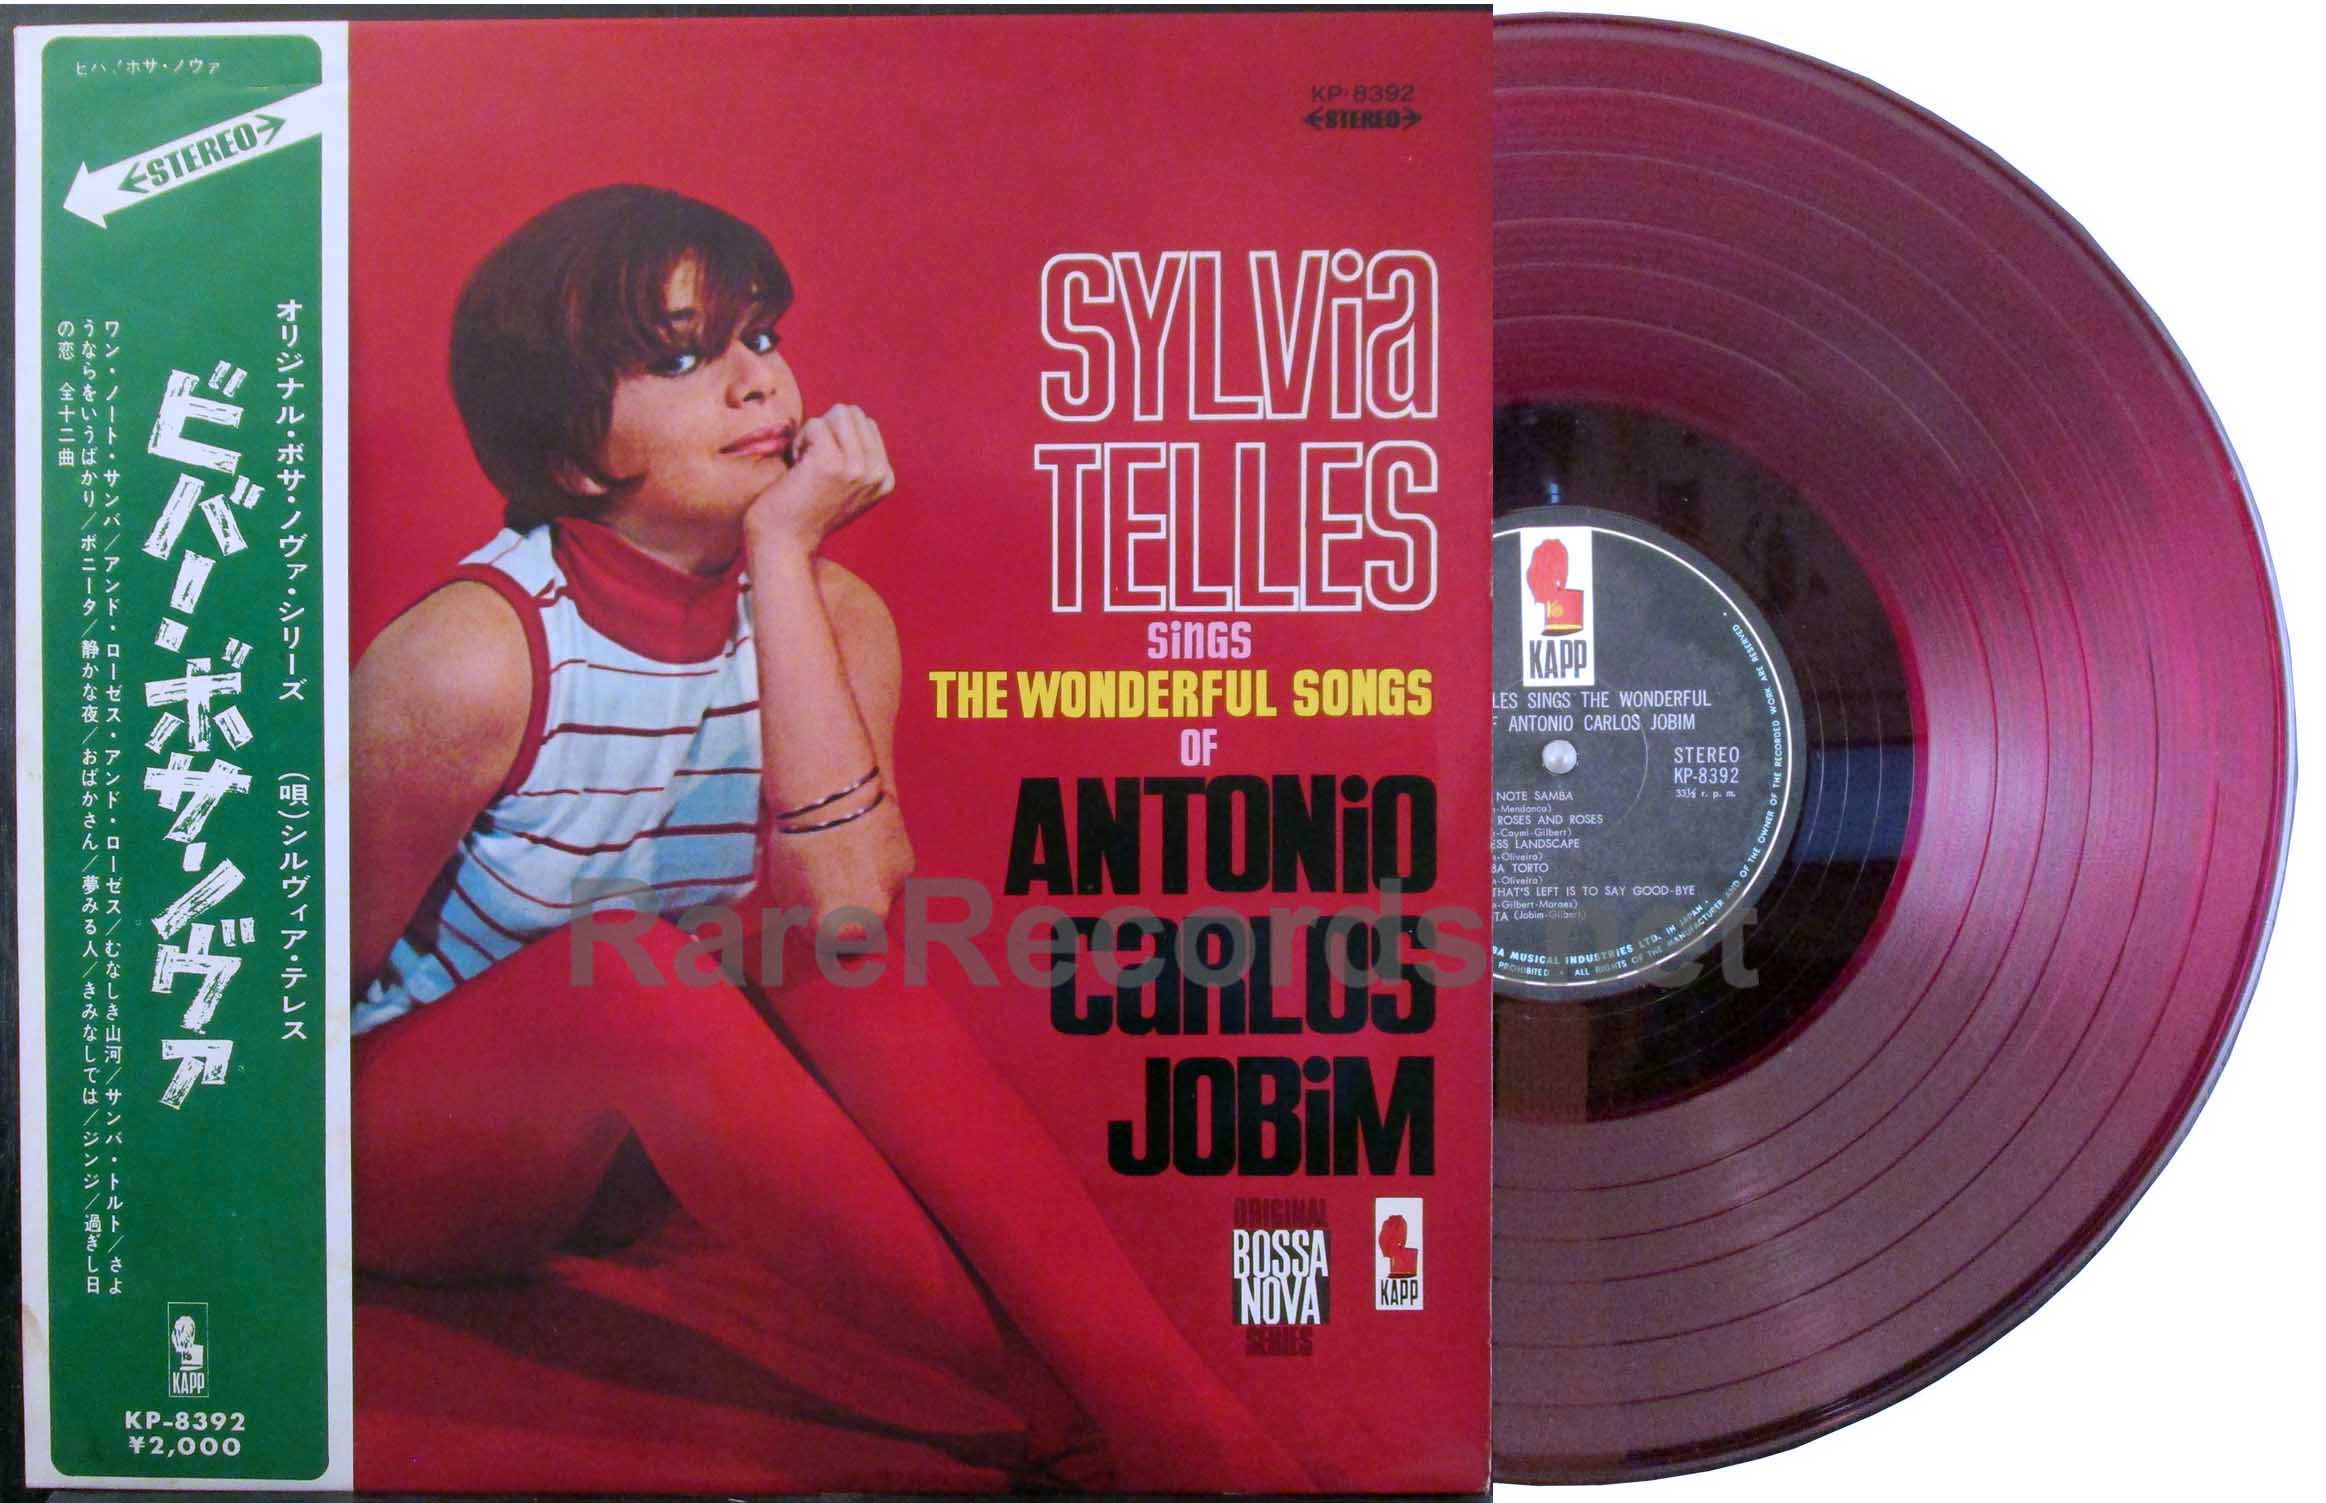 Japan　with　vinyl　Songs　Carlos　Of　Telles　Sings　Wonderful　LP　obi　Sylvia　Antonio　Jobim　–　The　red